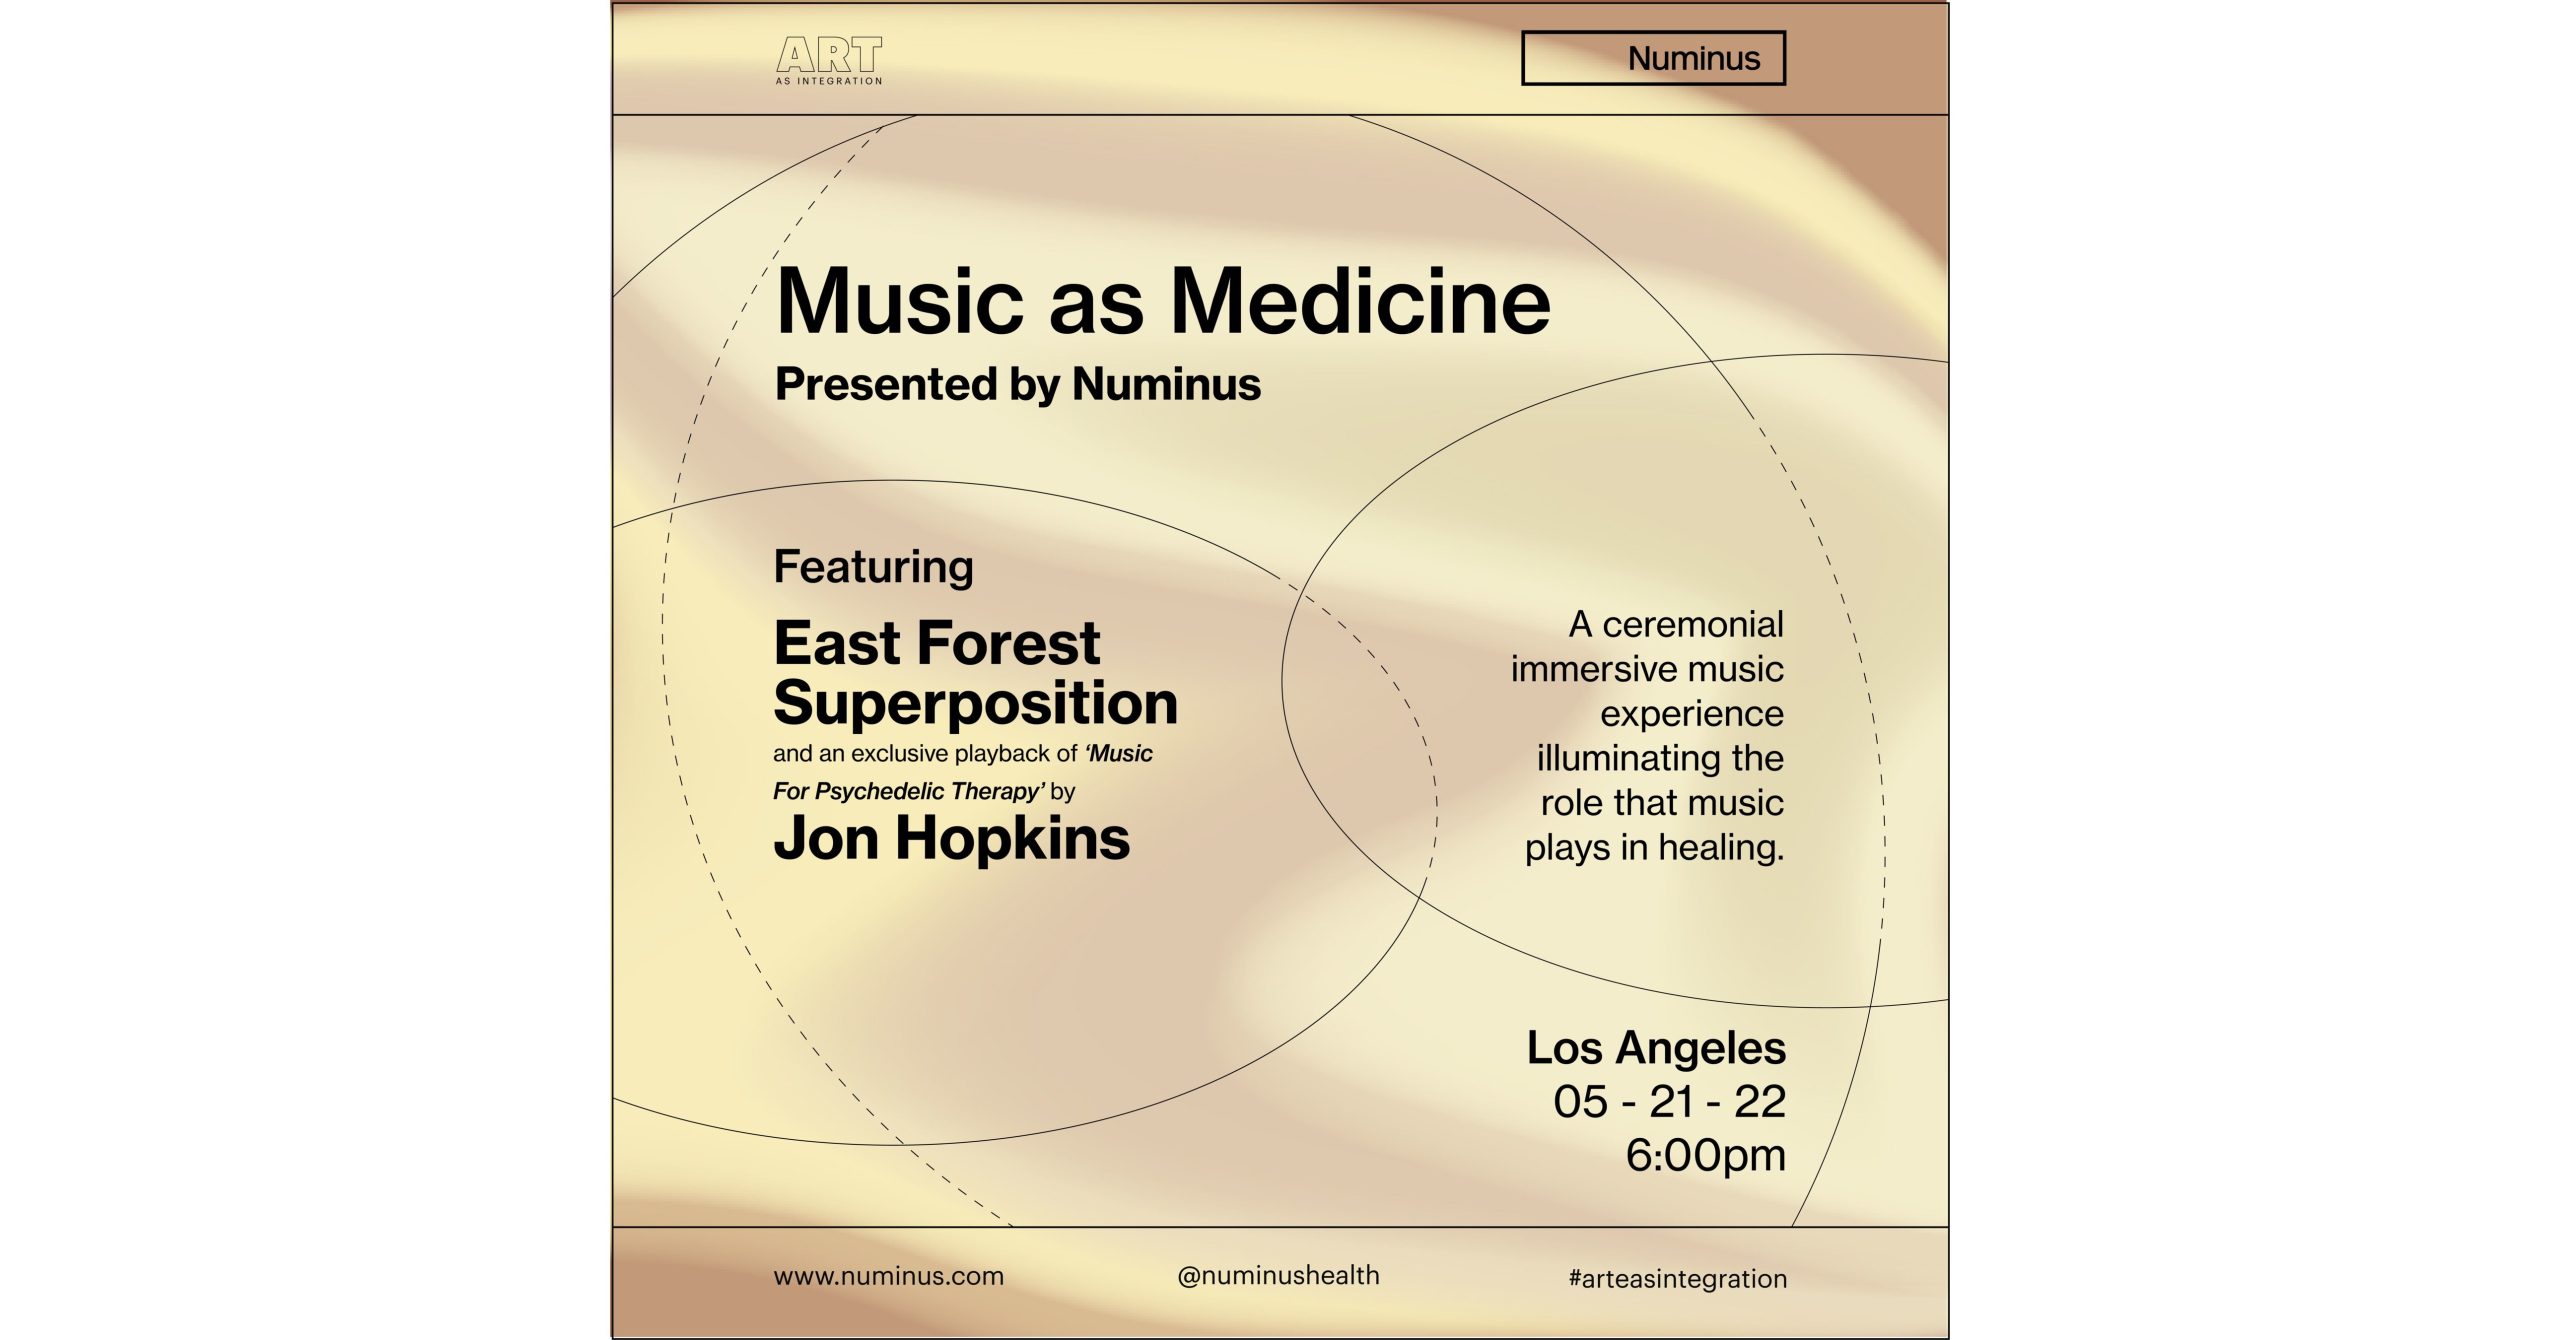 Numinus Announces the Music as Medicine Event Series